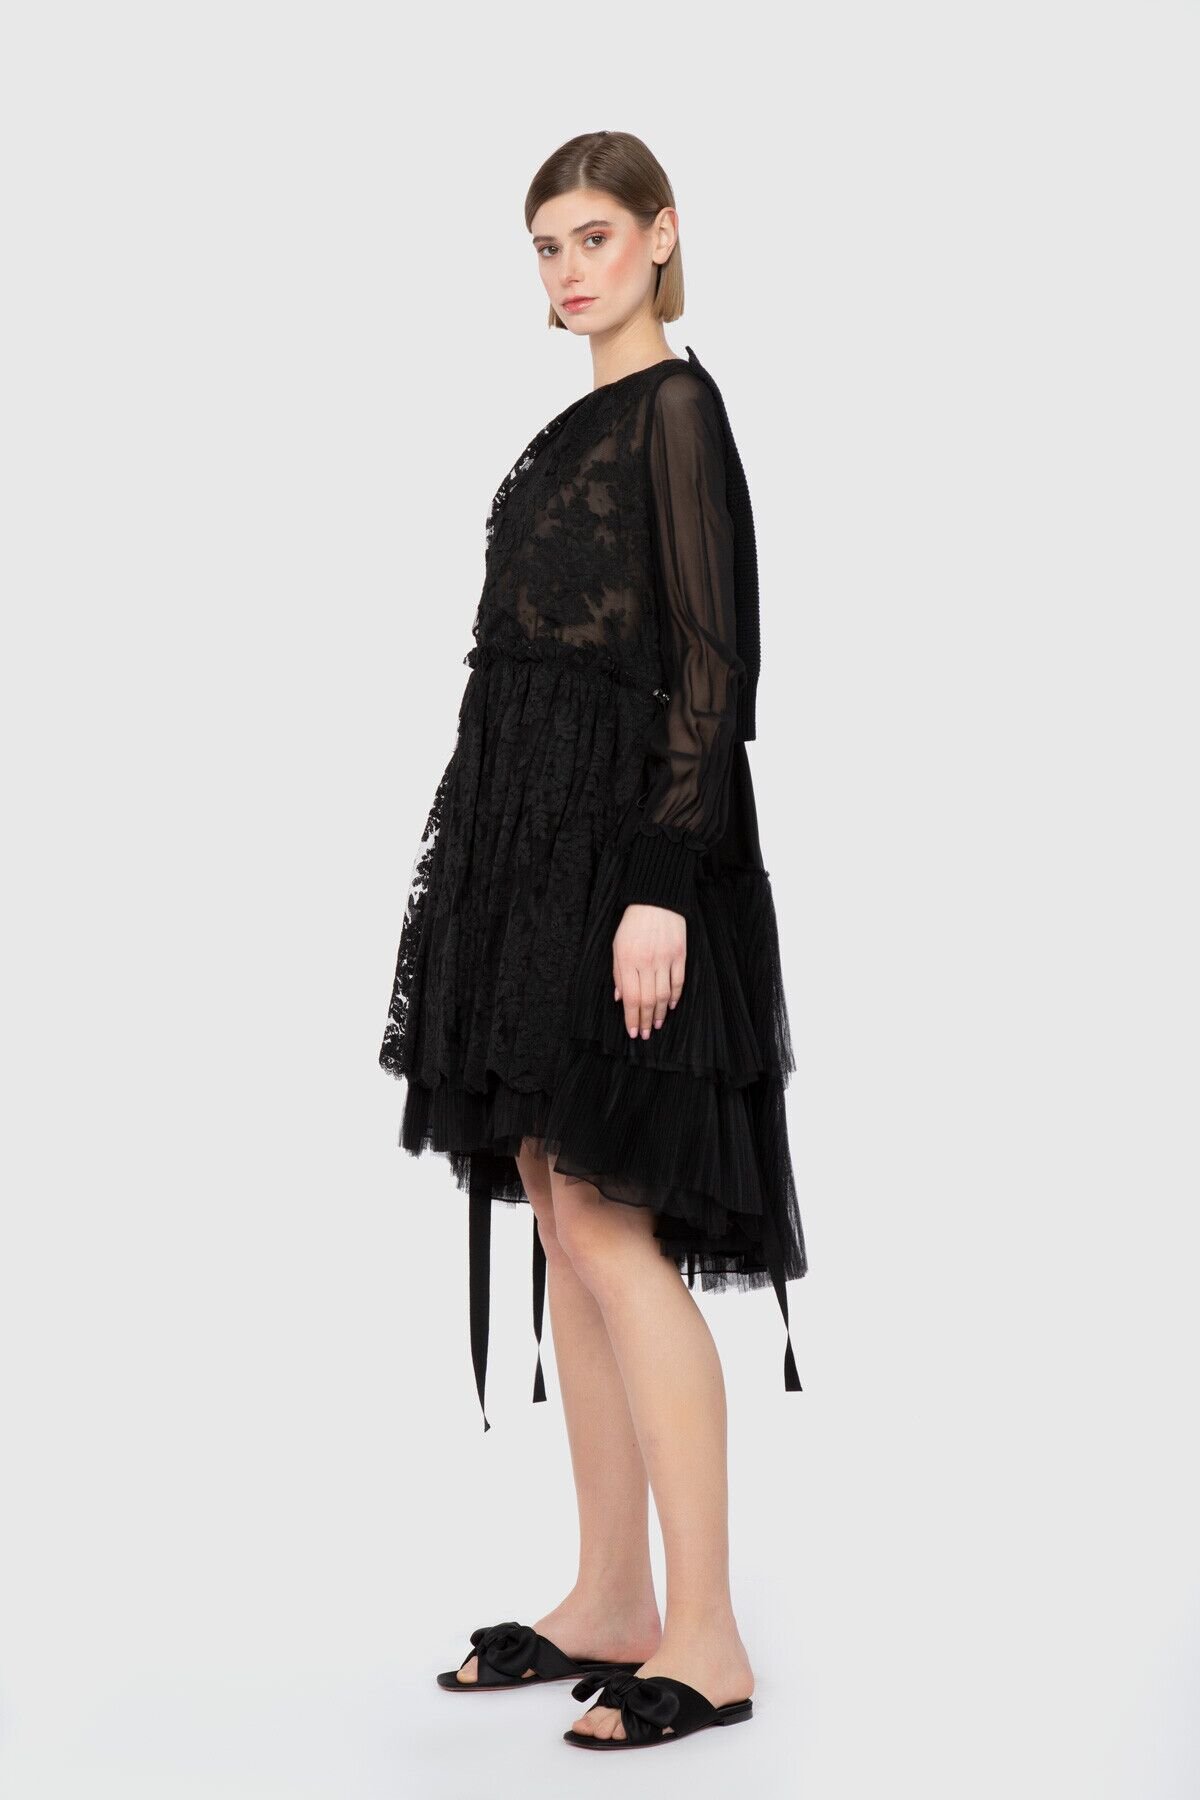 Dice Kayek Transparan Ve Katlı Etek Detaylı Siyah Tasarım Elbise